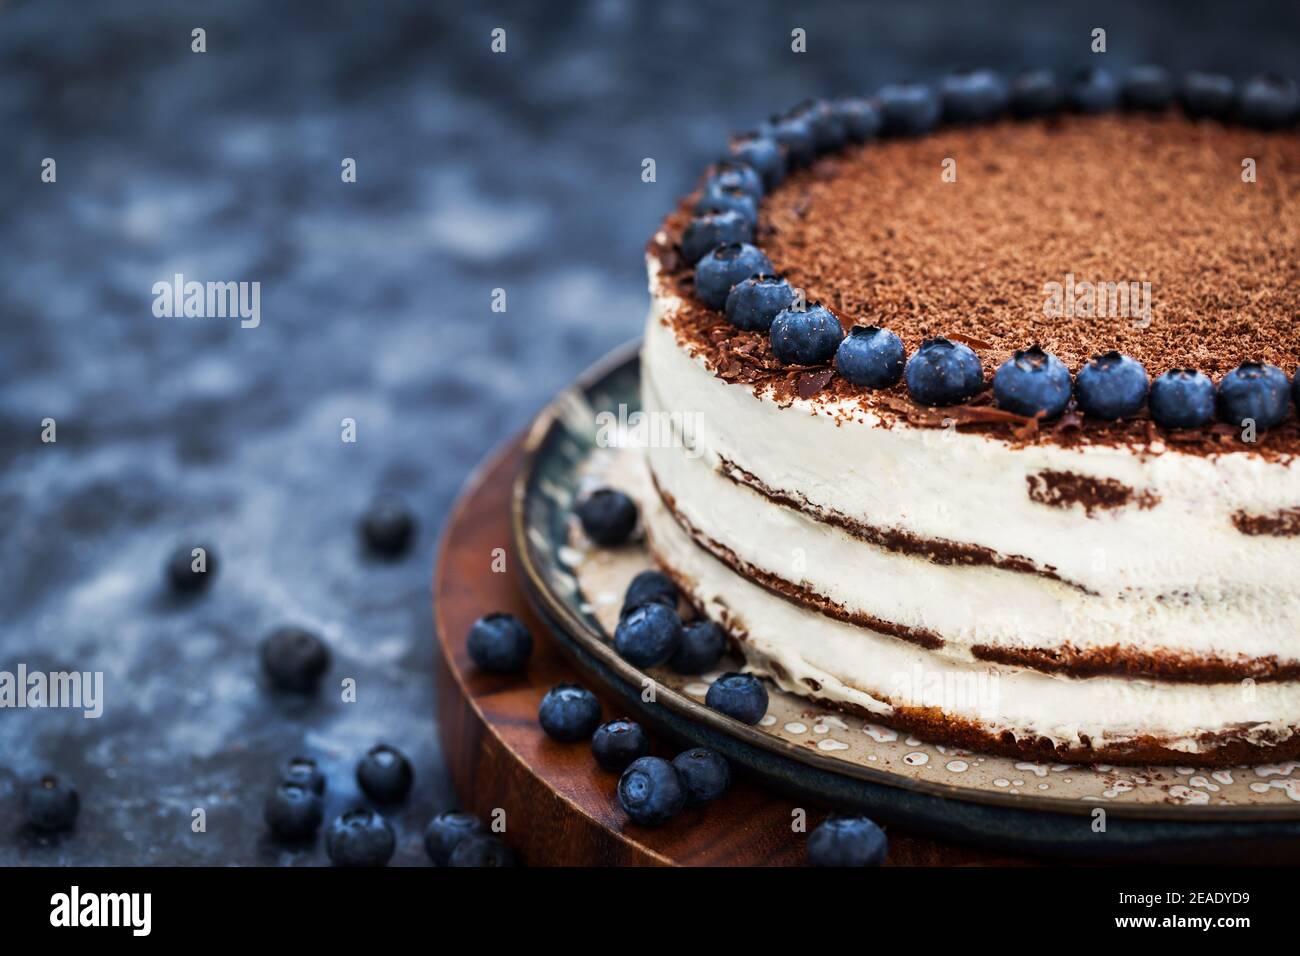 Délicieux gâteau à la vanille crème aigre maison décoré de chocolat et myrtille fraîche Banque D'Images